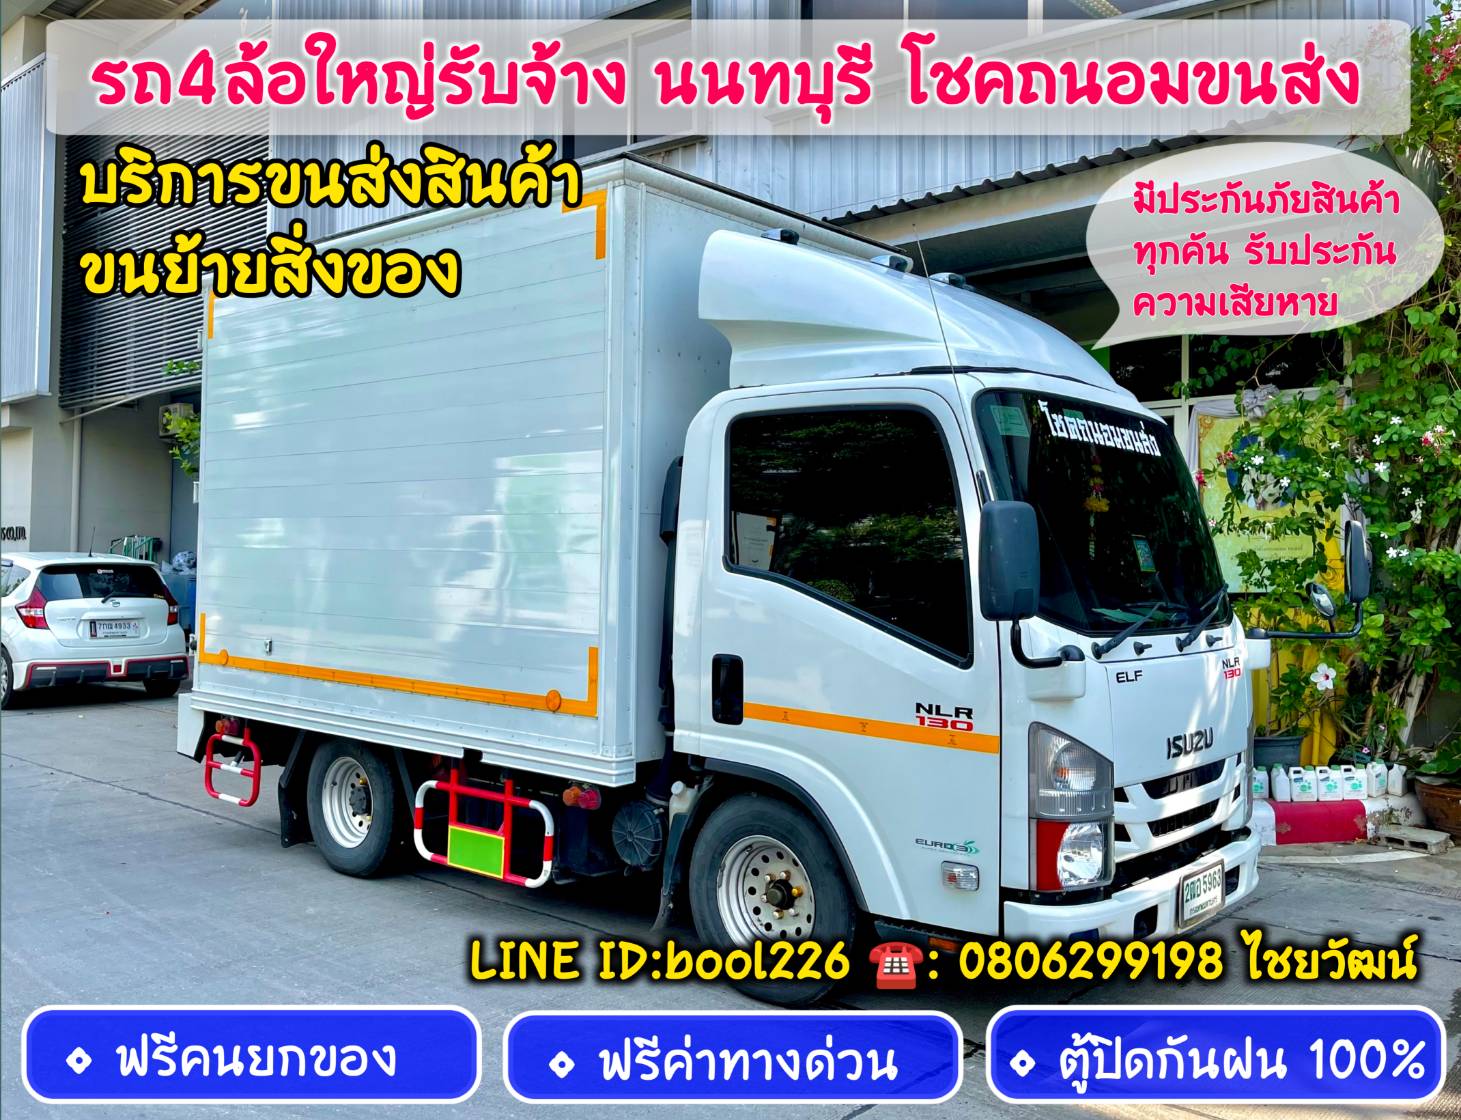 รถรับจ้างขนของนนทบุรี ขนส่งสินค้าทั่วประเทศ ติดตามเส้นทางได้ตลอด 24 ชั่วโมง